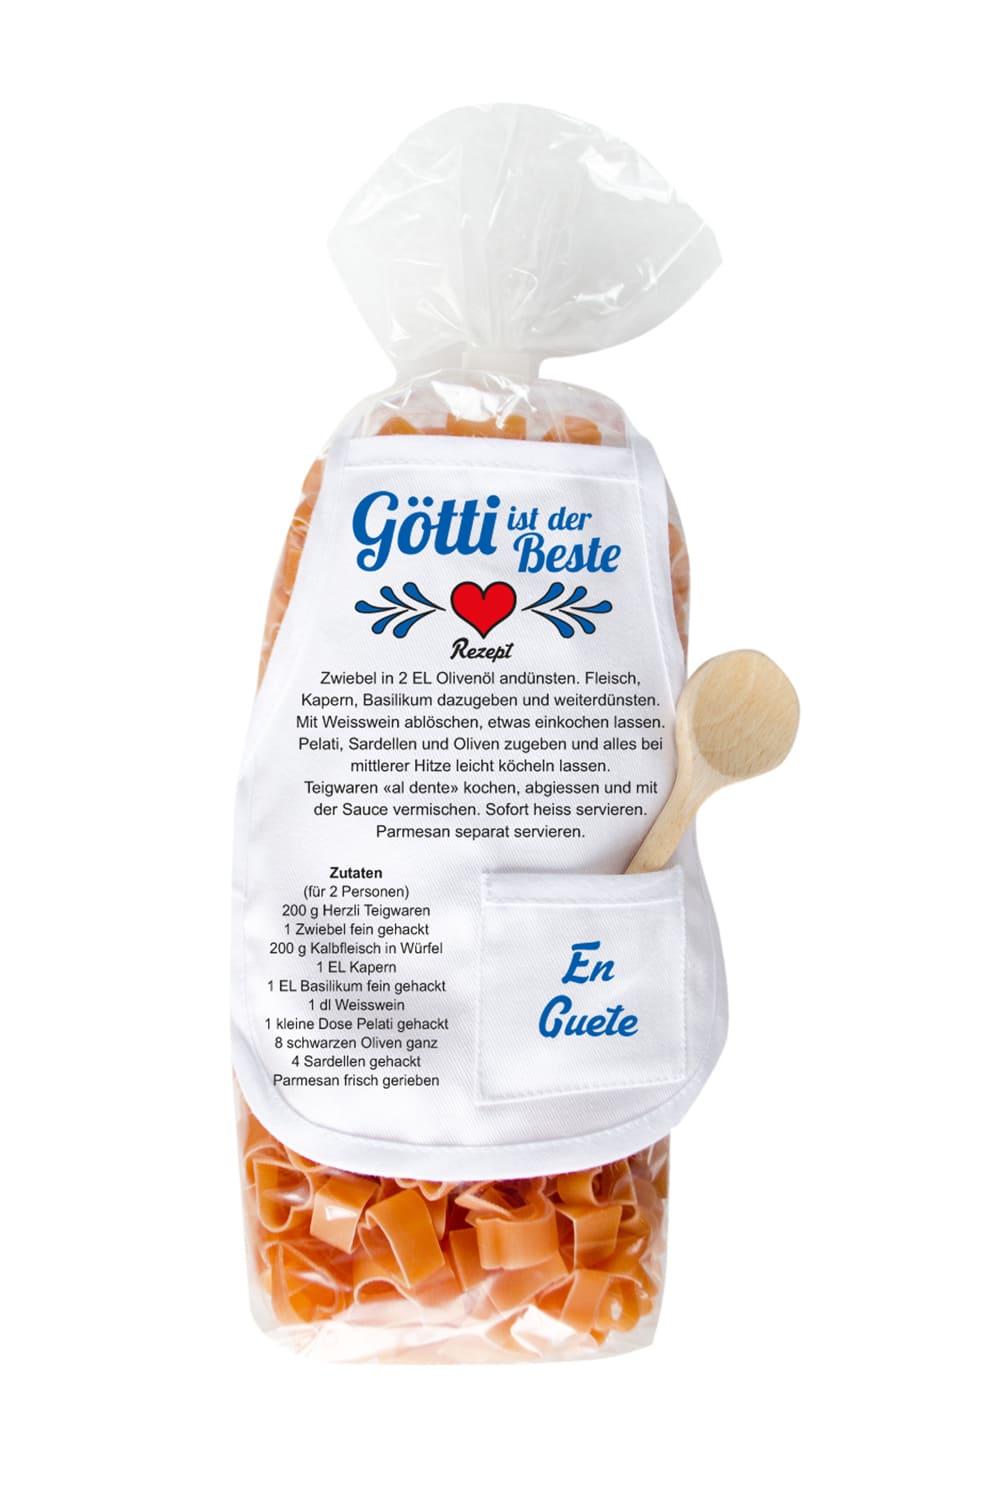 Die Goetti Pasta sind in einer Herz Form und in einer schoenen Verpackung mit einer Mini Kochschuerze. Ausserdem steht auf der laessigen Kochschuerze ein feines Rezept zum Nachkochen und der Spruch: Goetti ist der Beste. Ein tolles Geschenk für den lieben Pate zum Geburtstag, zu Weihnachten oder zum Valentinstag.